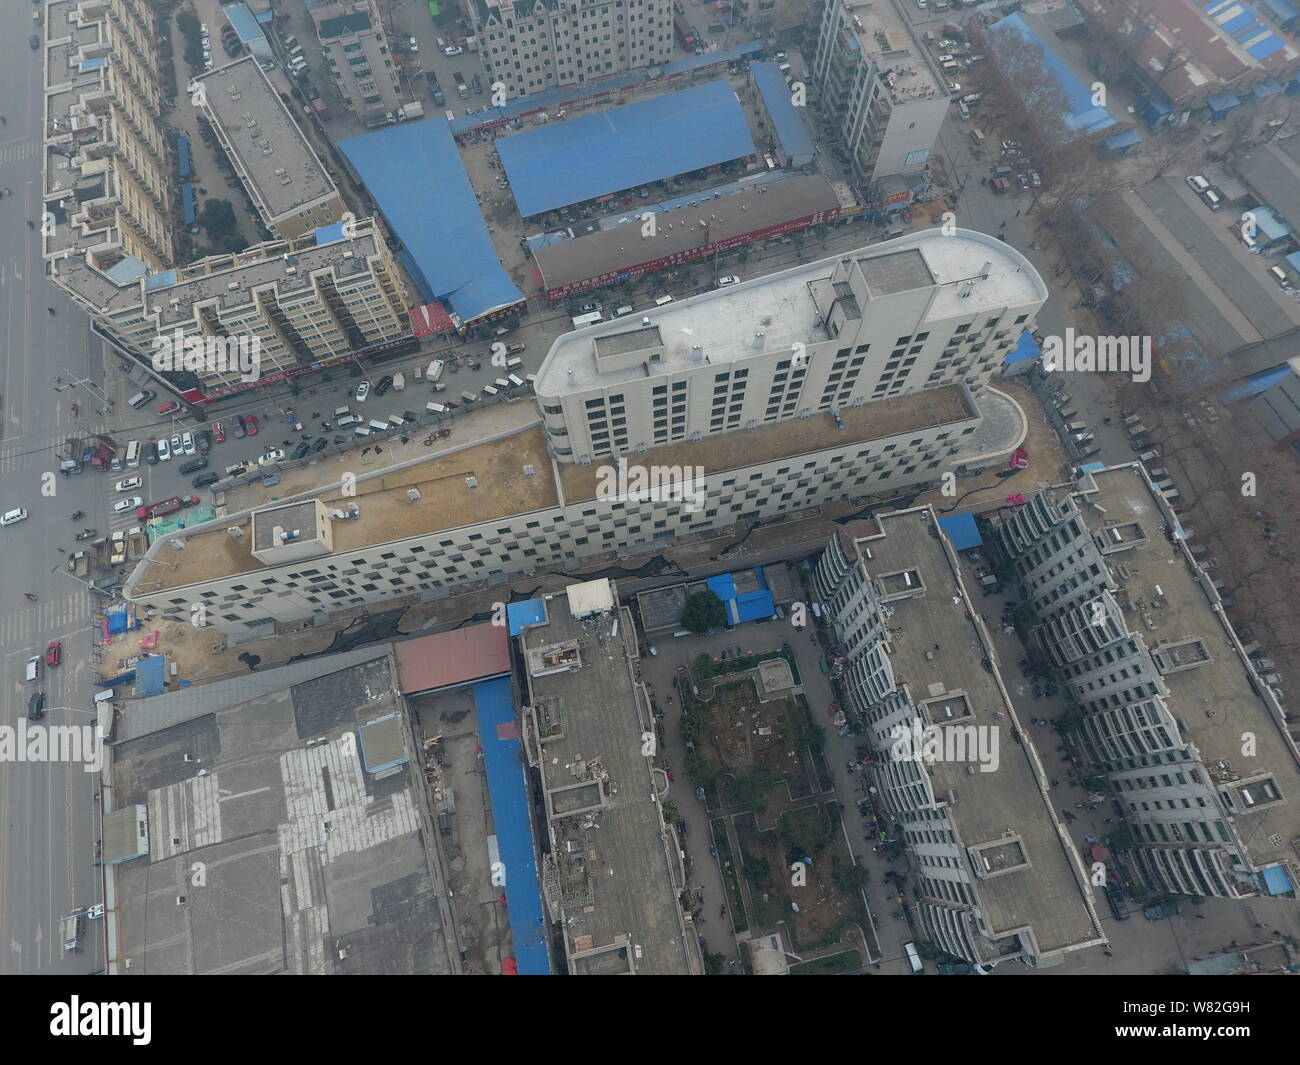 Luftaufnahme von einem Dampfer-förmigen Gebäude in Zhengzhou City, Central China Provinz Henan, am 14. Februar 2017. Ein dampfschiff-förmigen Gebäude hat Appe Stockfoto